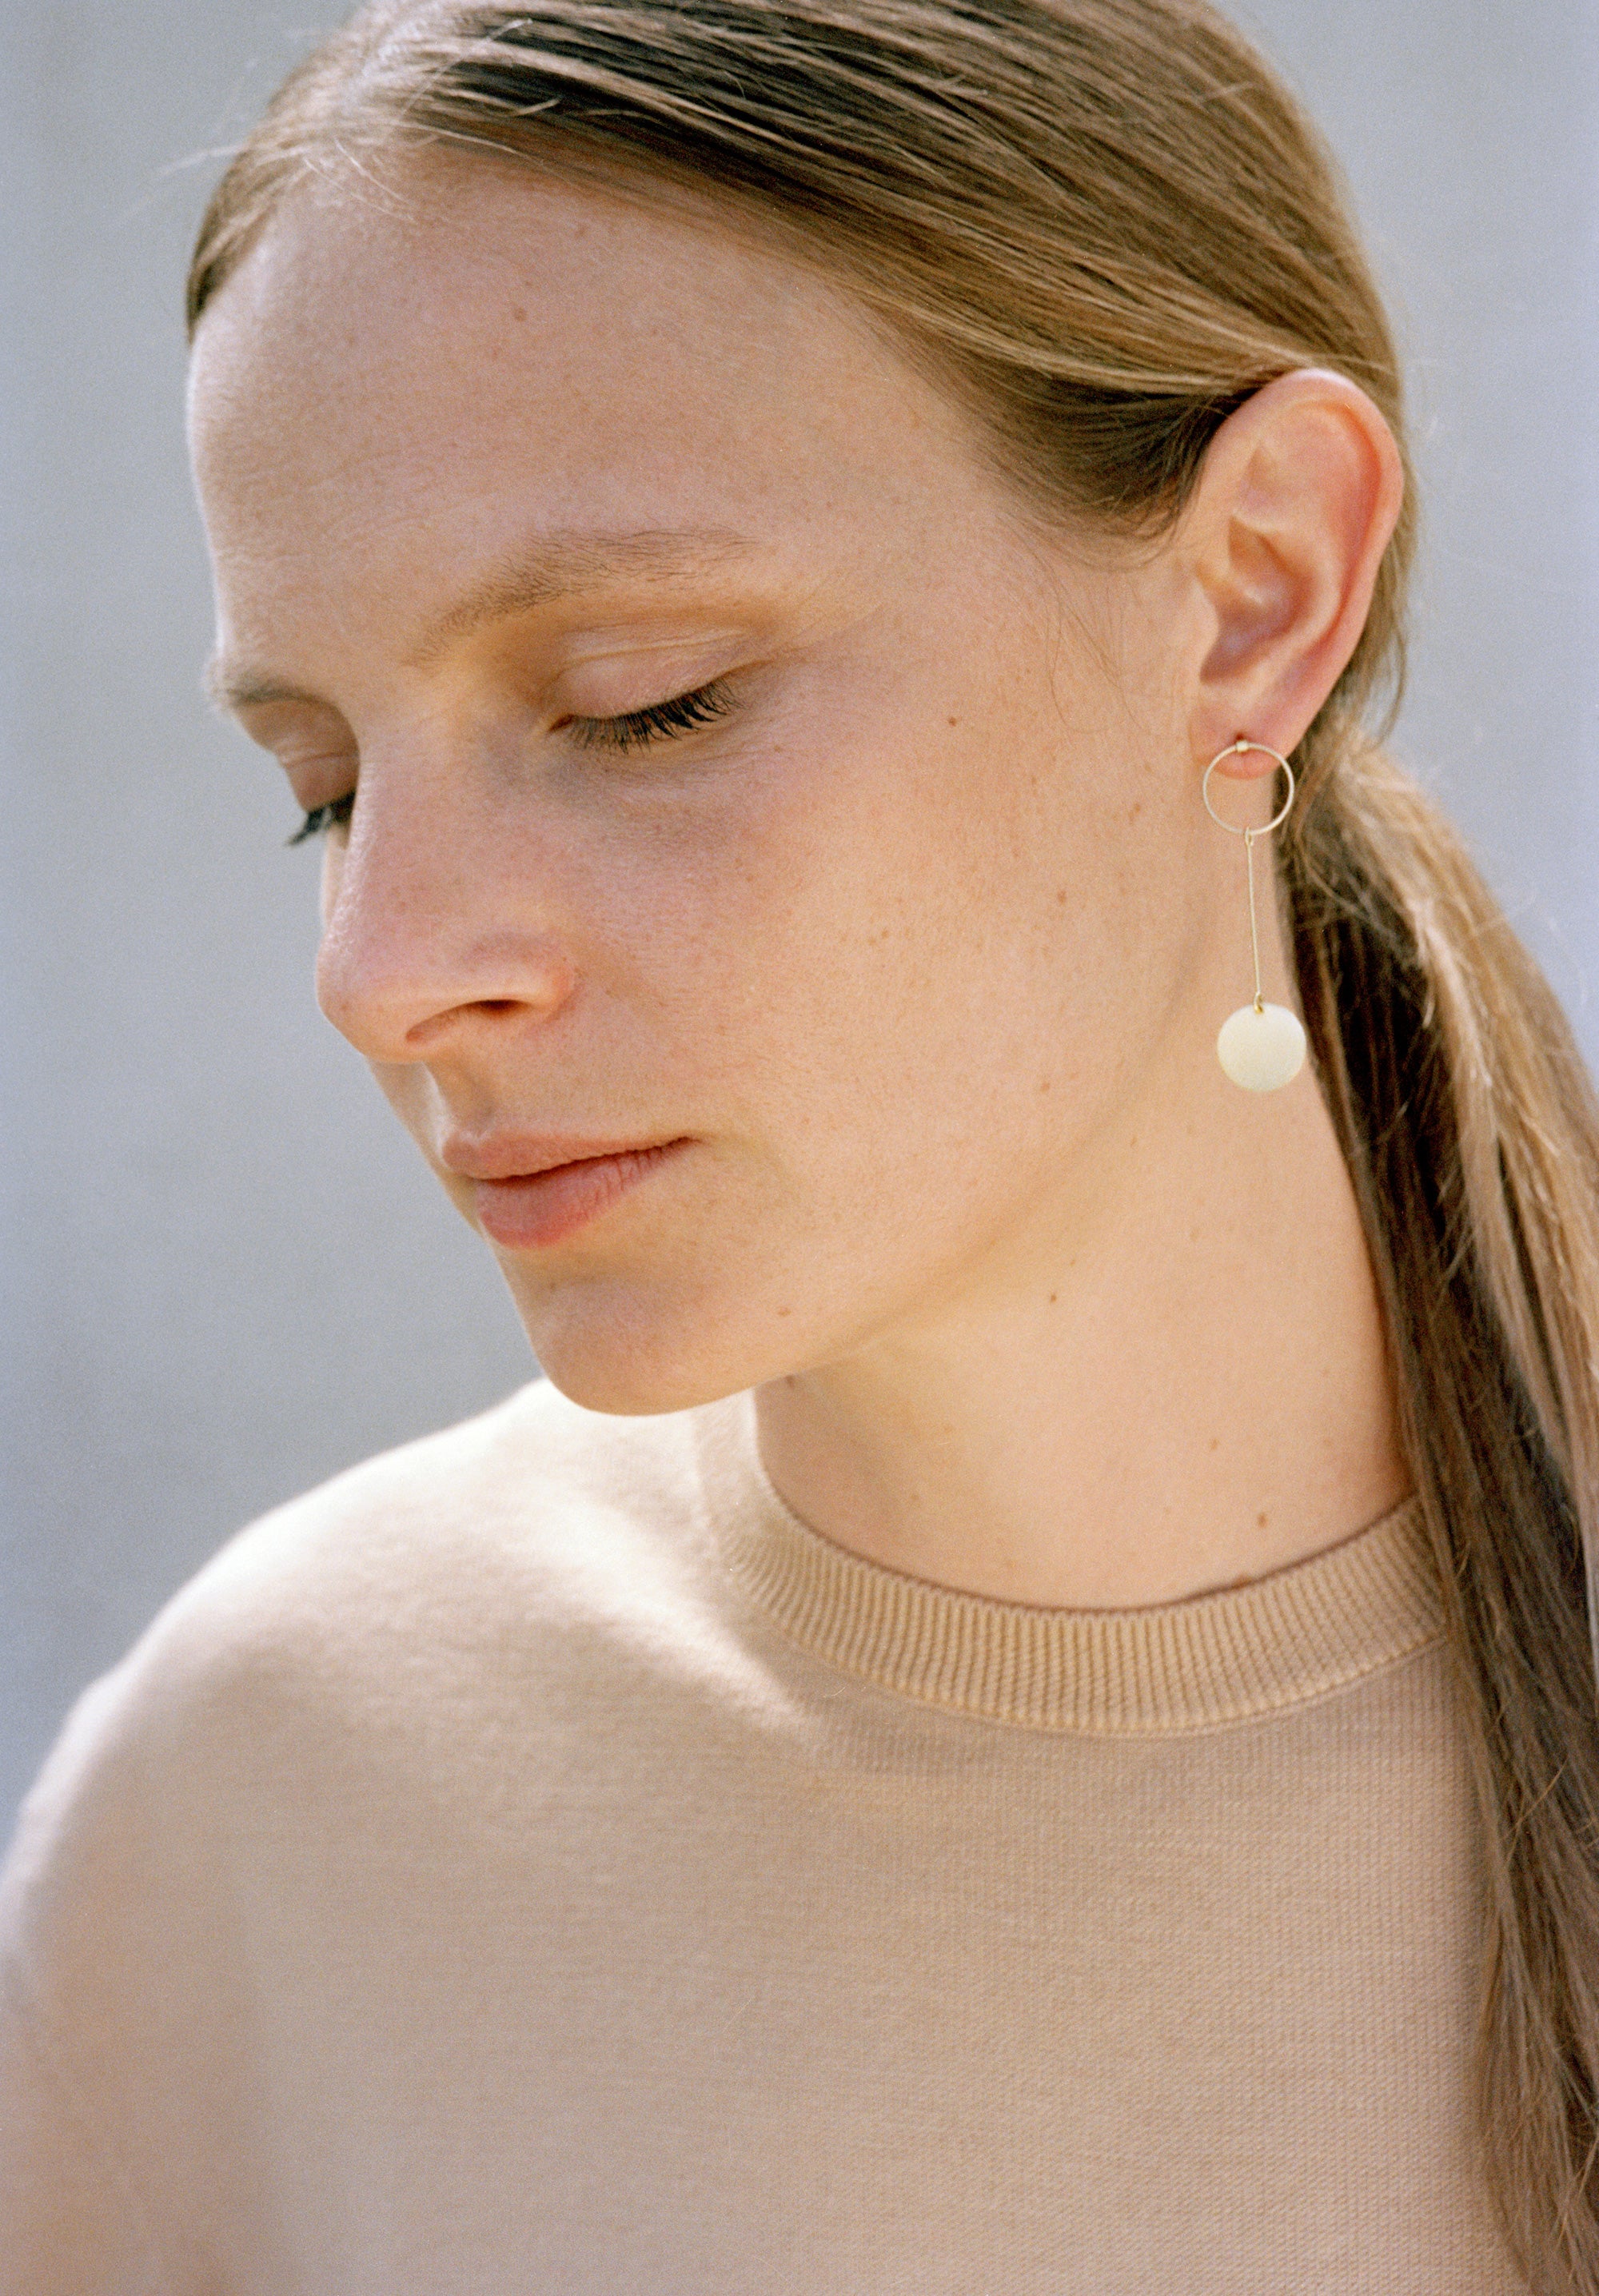 18KT yellow gold hanging earrings worn by a female ear - Pieno Vuoto